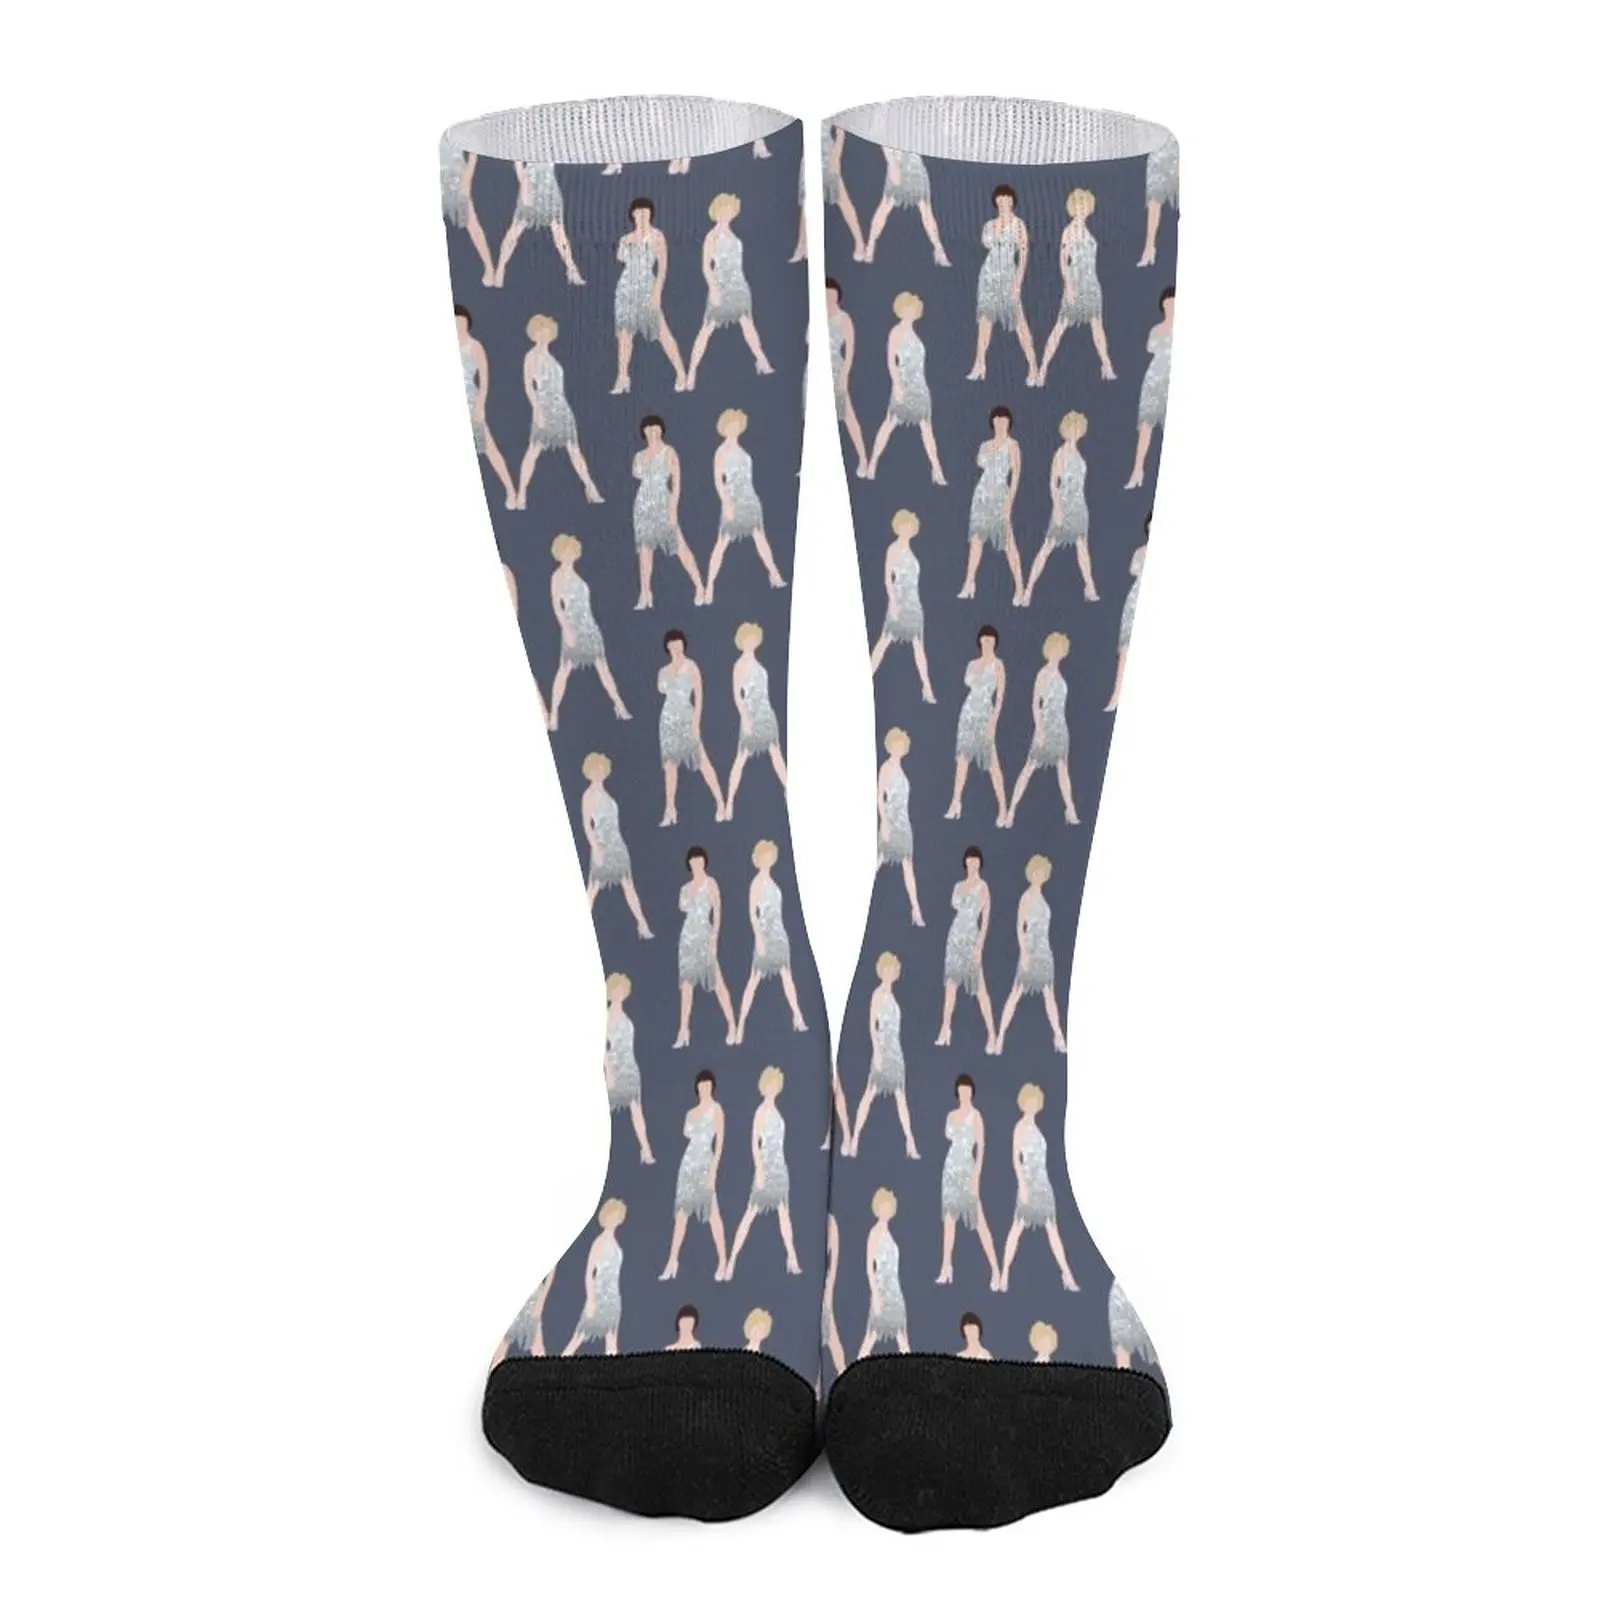 velma and roxie Socks gift for men sport socks